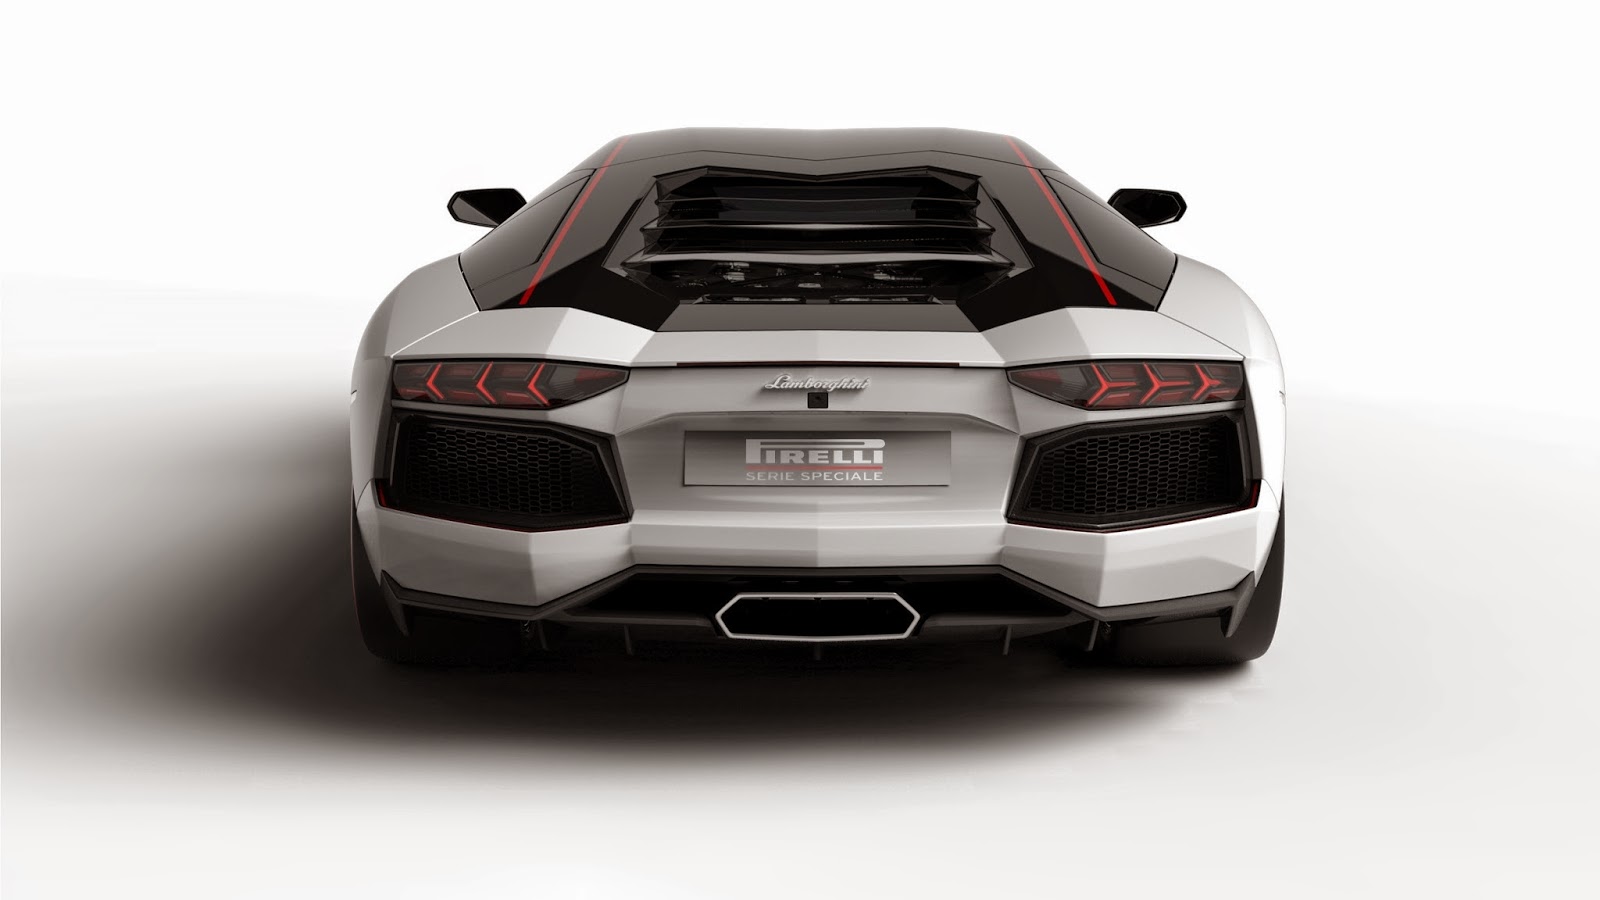 Lamborghini Aventador "Pirelli Edition"